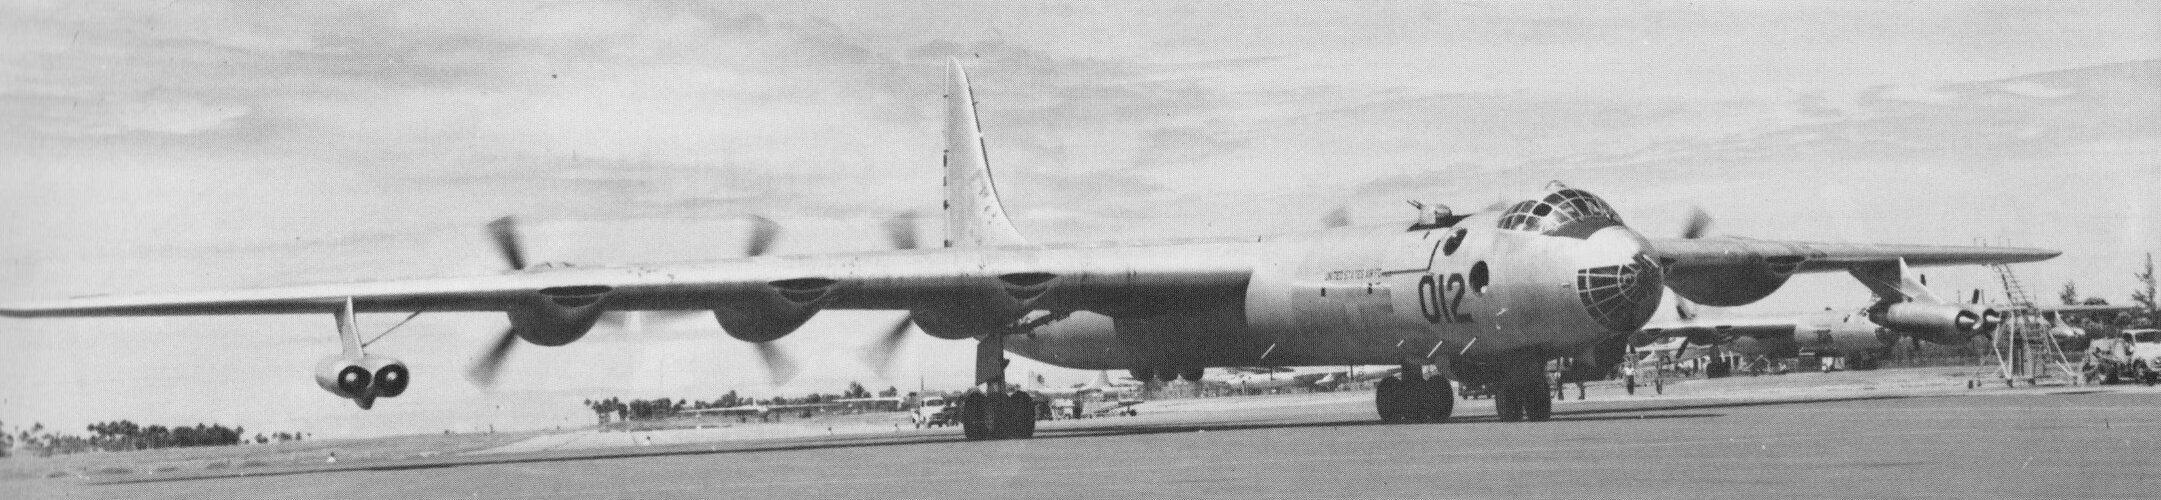 B-36_02.jpg